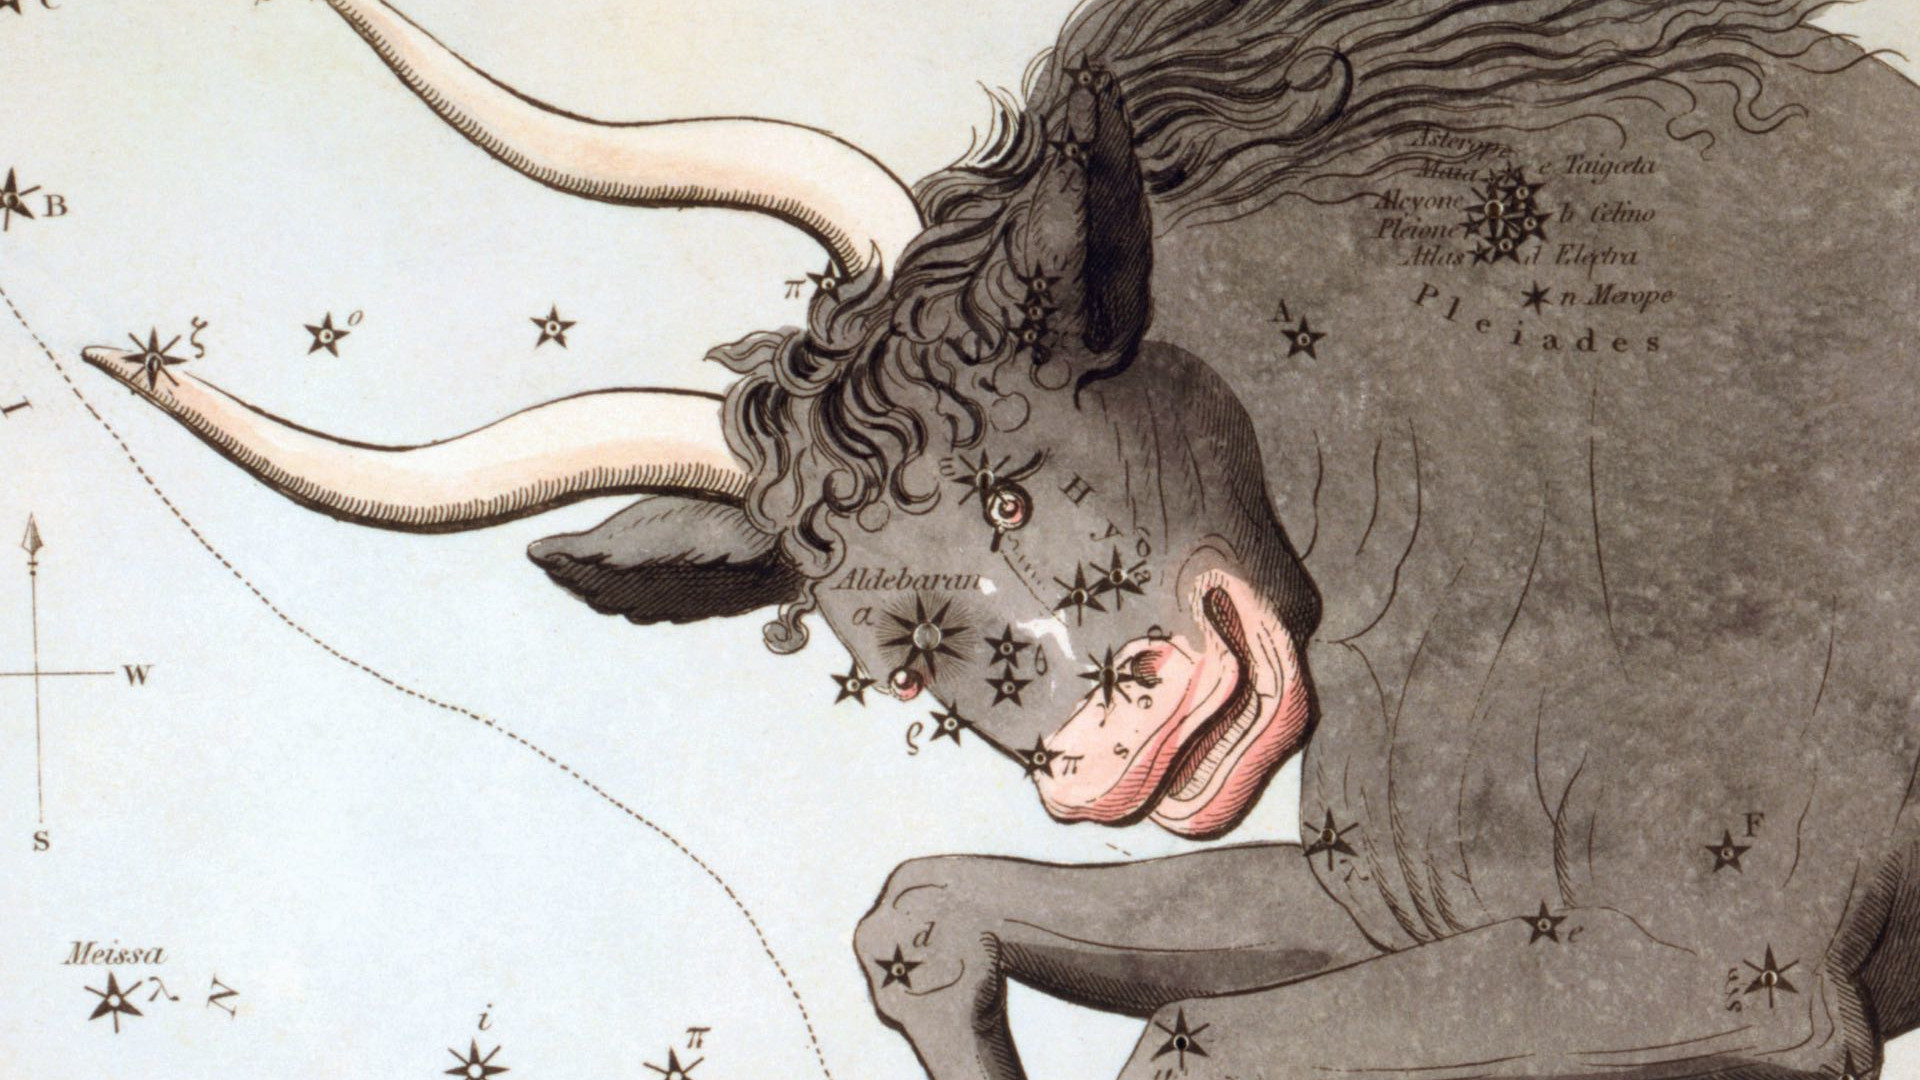 Medan gamla stjärnkartor visar en mäktig tjur, kan man på natthimlen oftast bara urskilja dess öga, två hornspetsar och två stjärnhopar med blotta ögat.